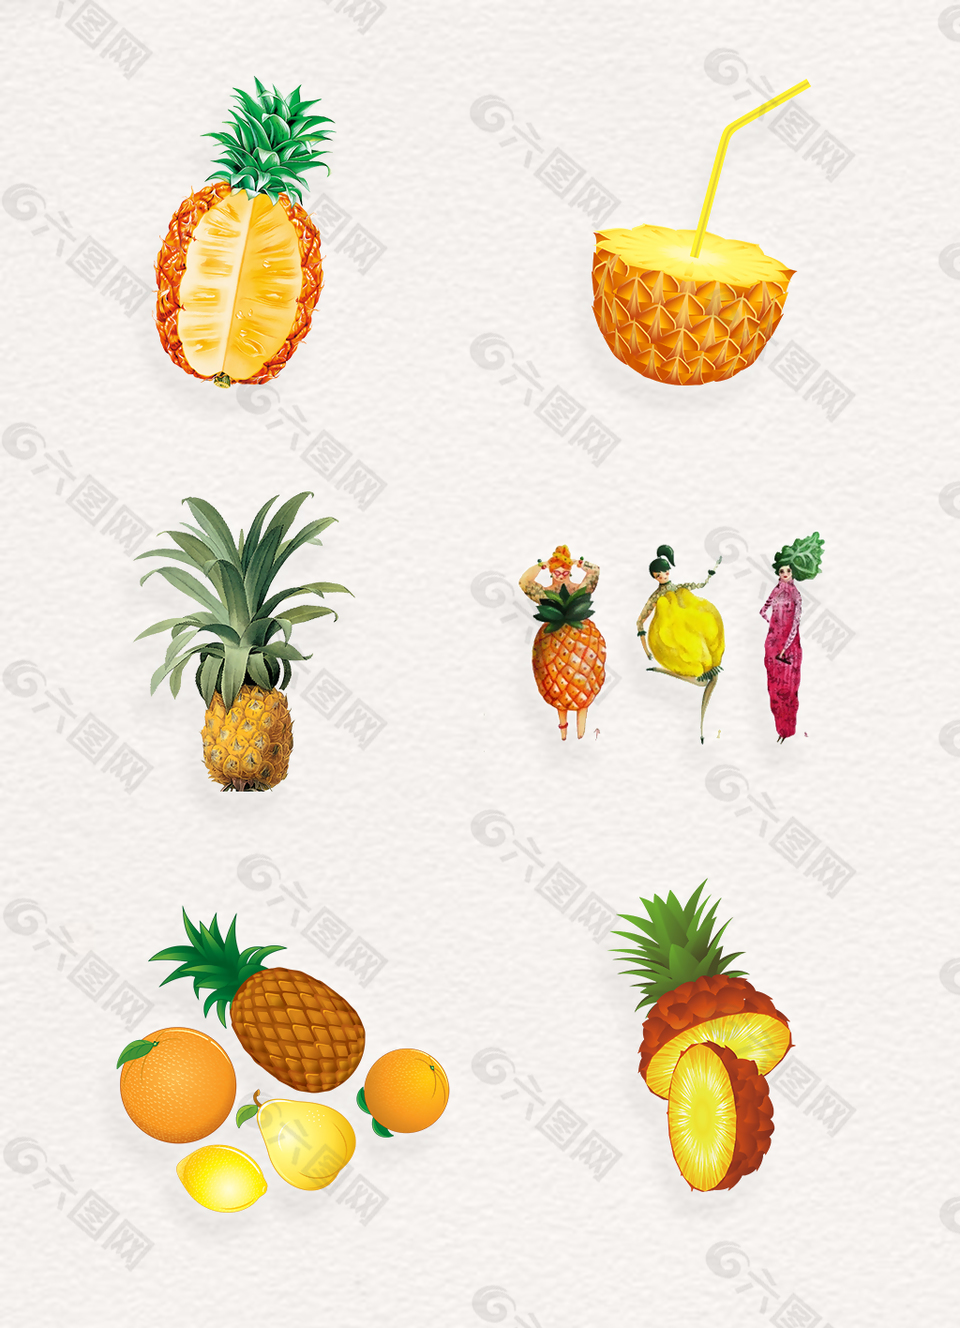 创意卡通水果菠萝png素材